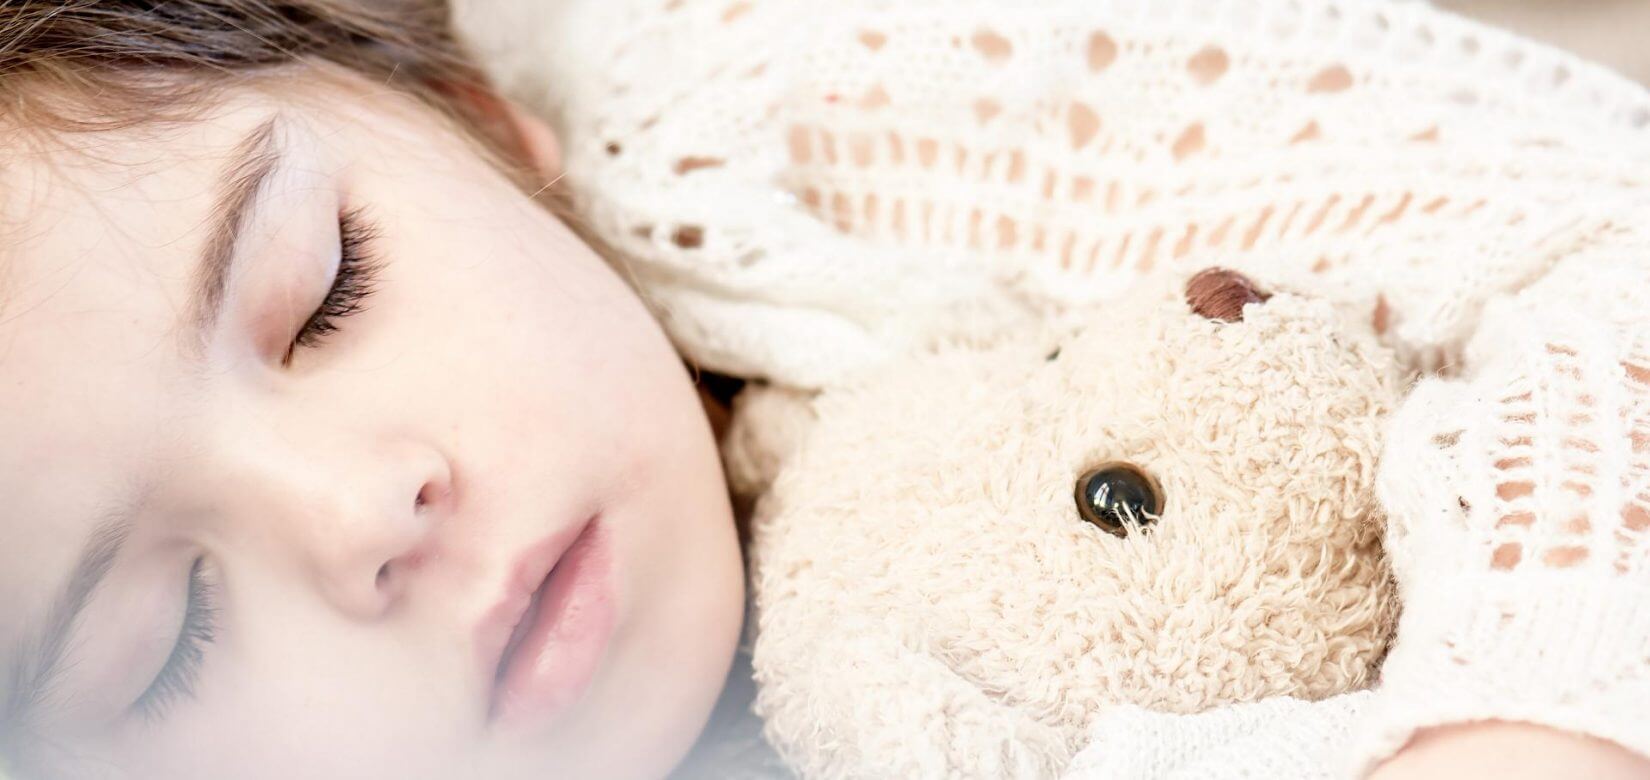 Γρίπη: Τα συμπτώματα είναι σε έξαρση! Πότε ν' ανησυχούμε για τα παιδιά μας;